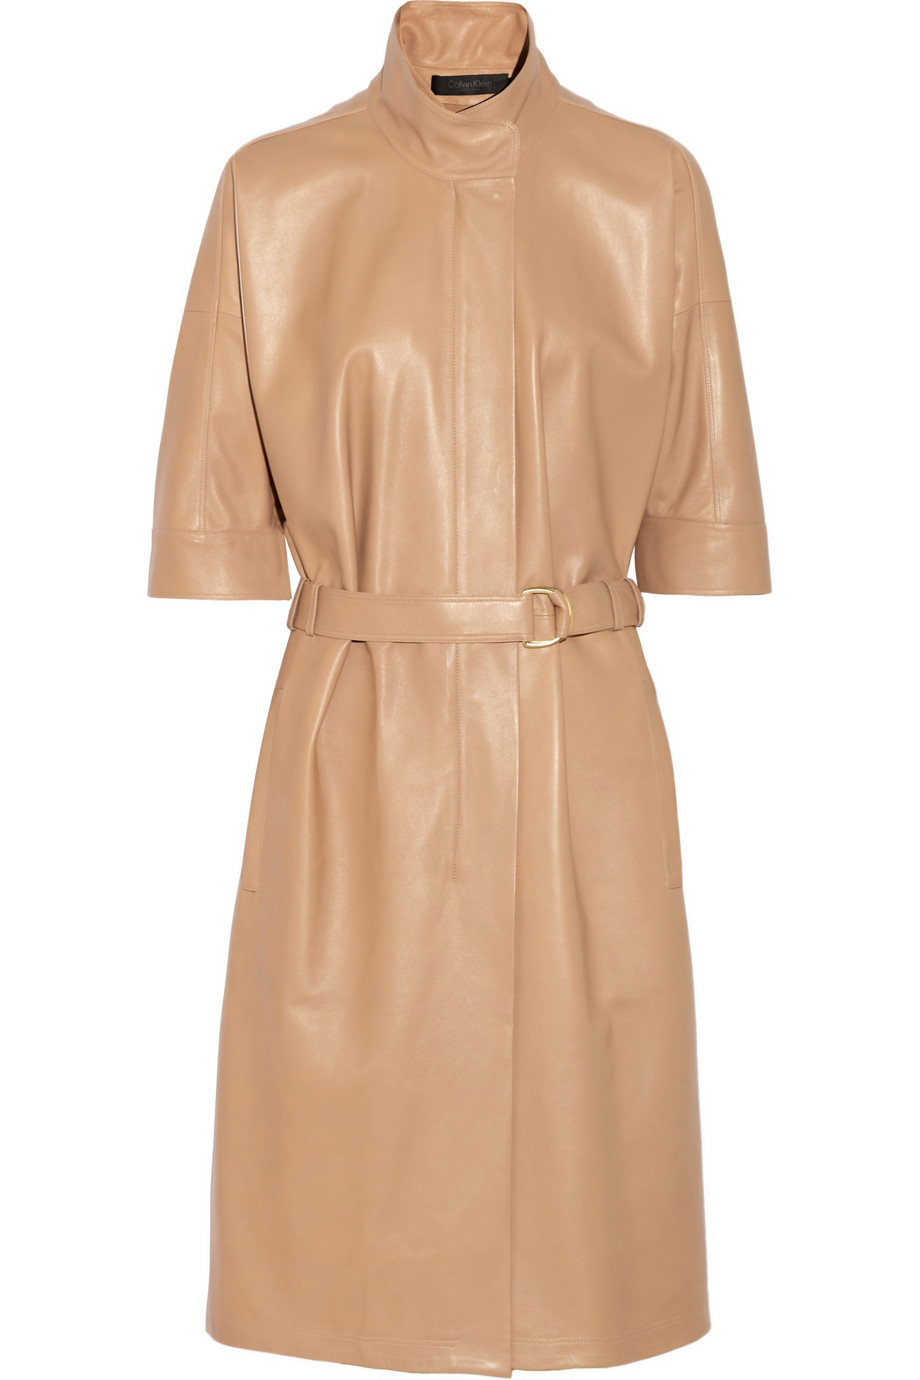 Skinn trench coat, Calvin Klein Collection, 33 600 kr